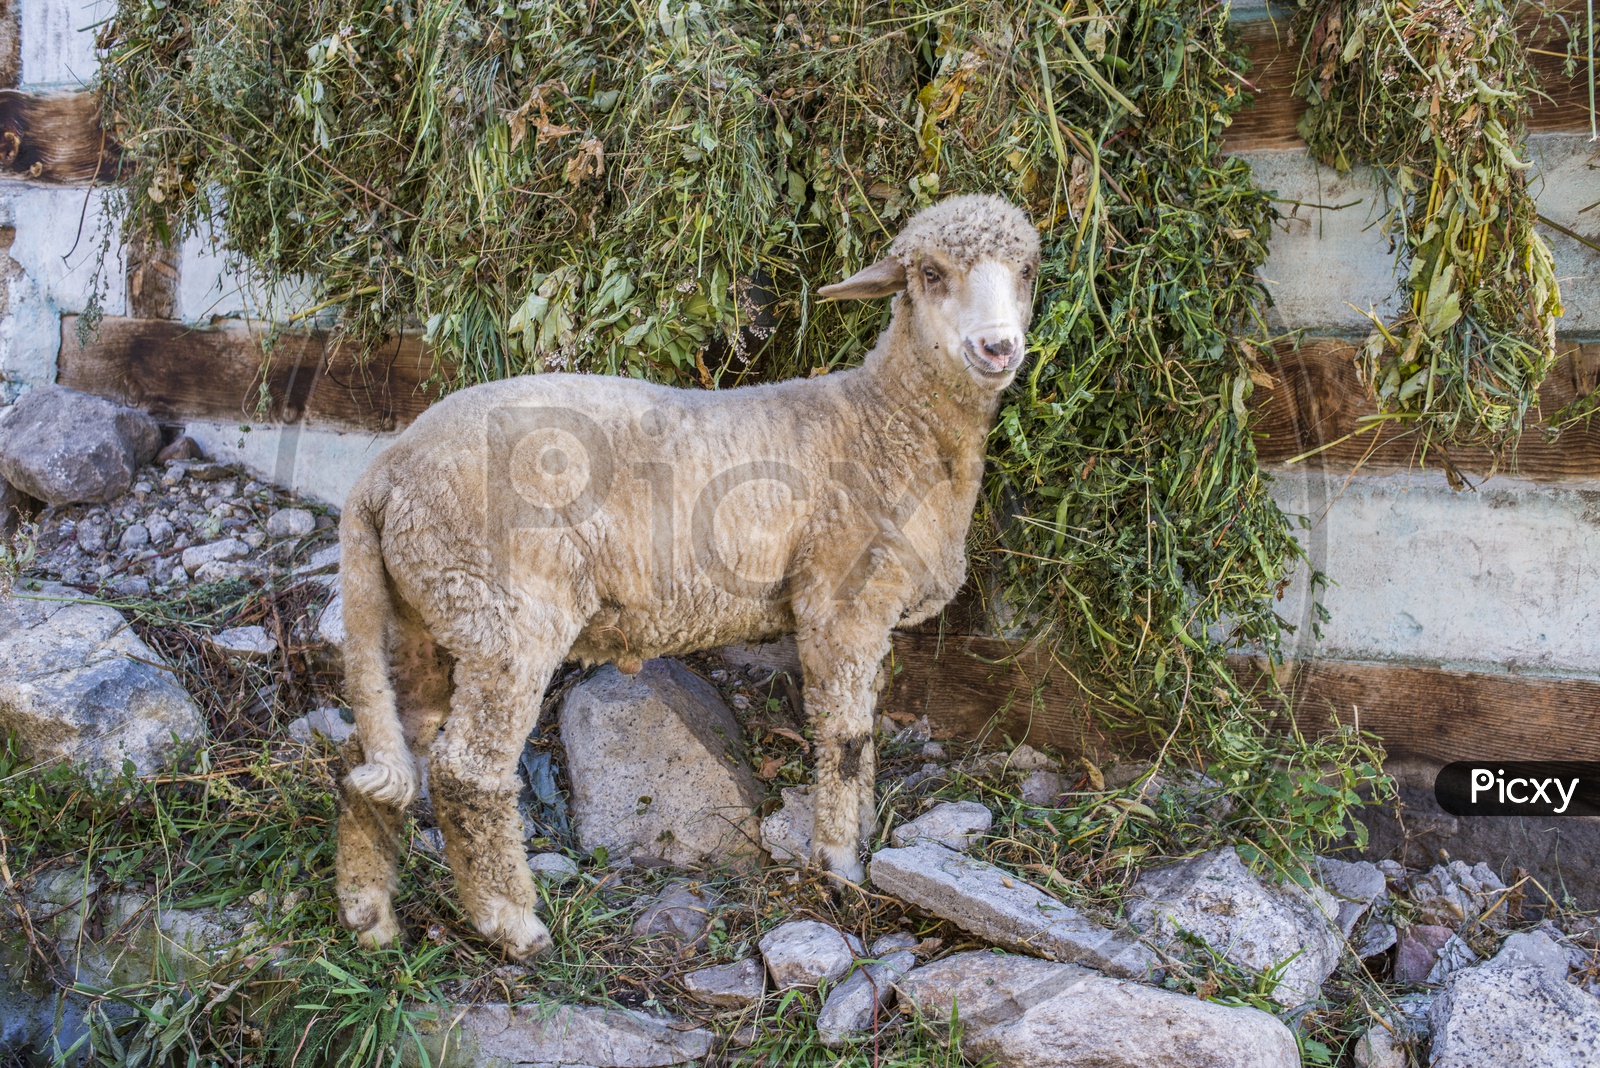 Sheep at Chitkul Village